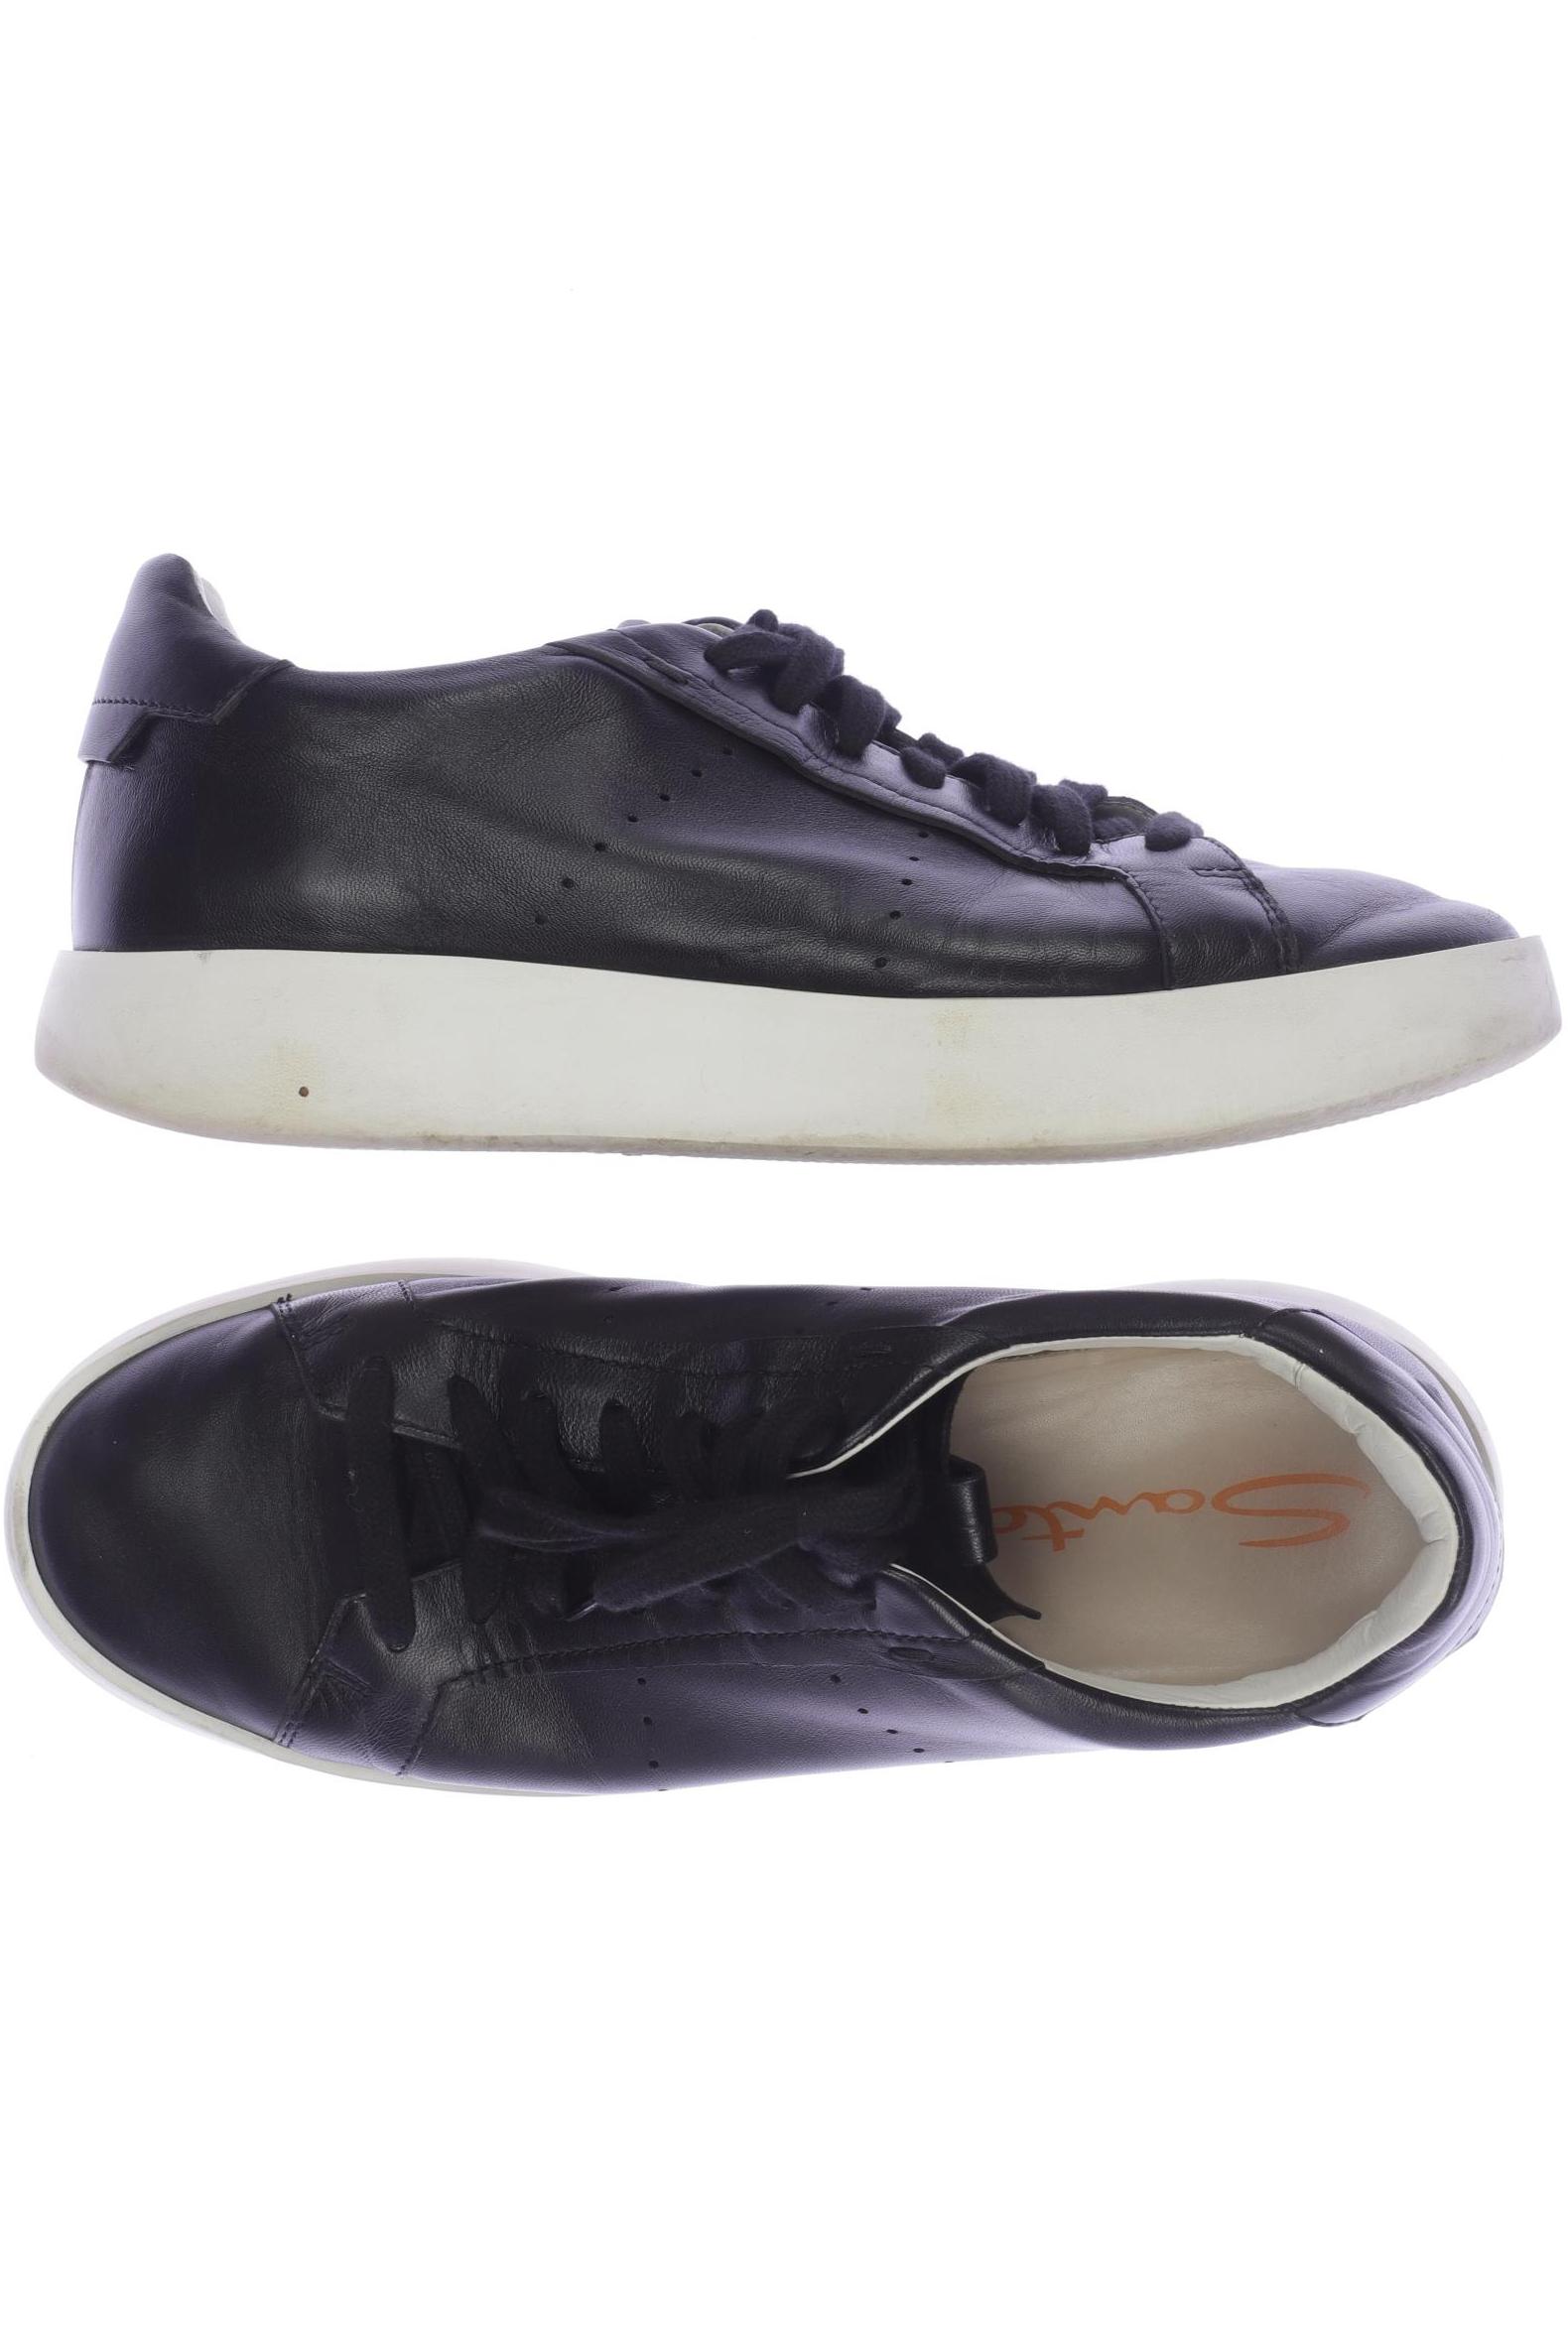 Santoni Damen Sneakers, schwarz von Santoni